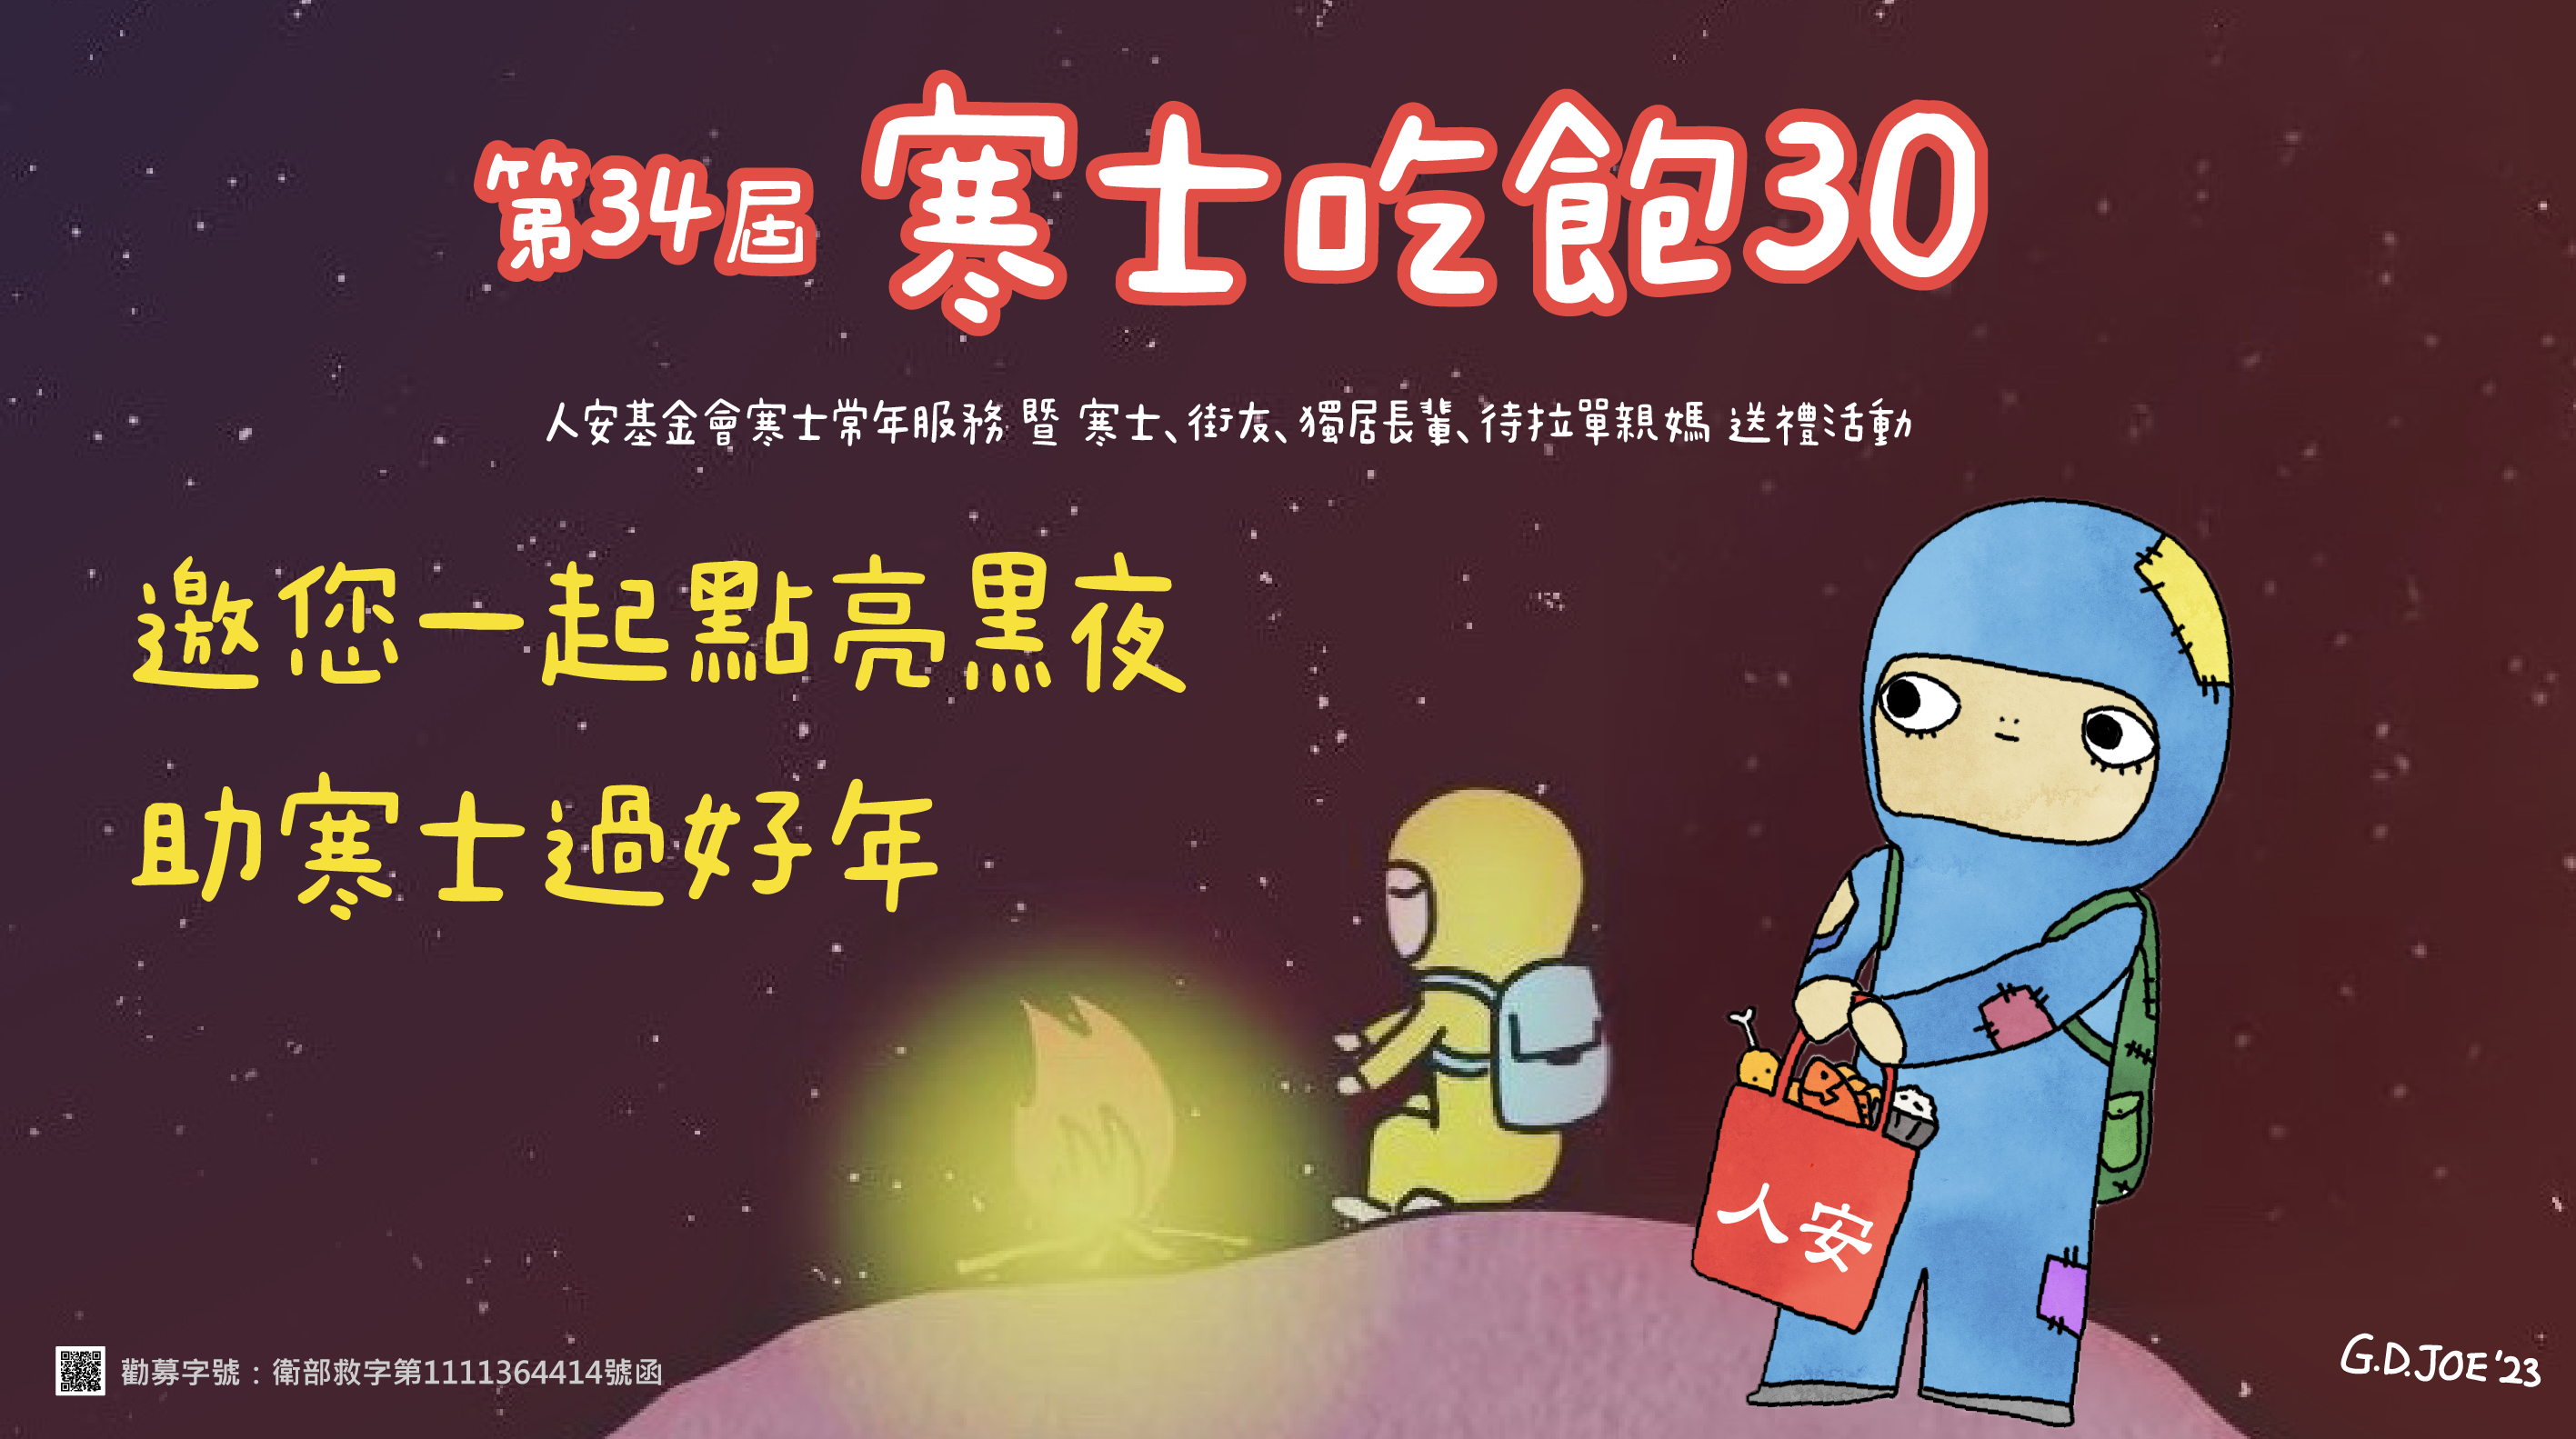 萬華平安站「第34屆寒士吃飽30」